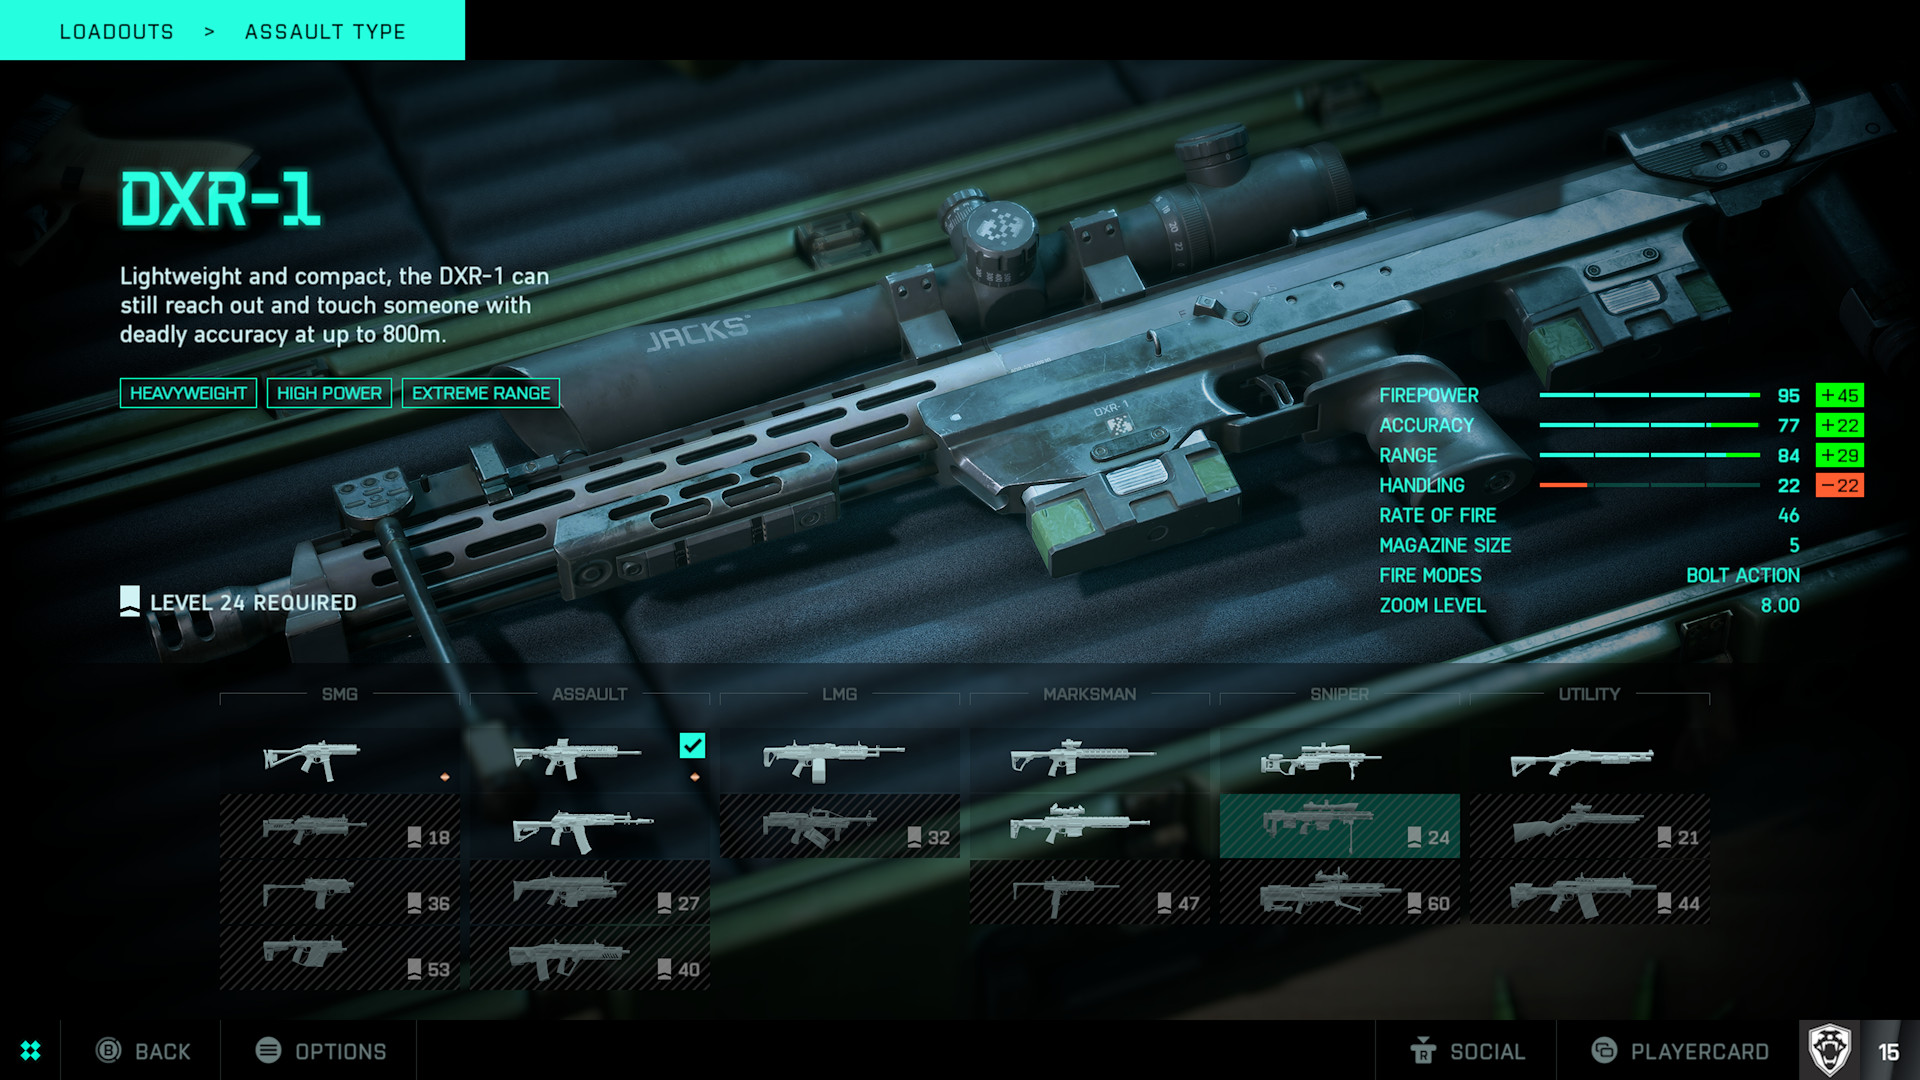 Best DXR-1 Battlefield 2042 loadout: The DXR-1 in the customization screen.